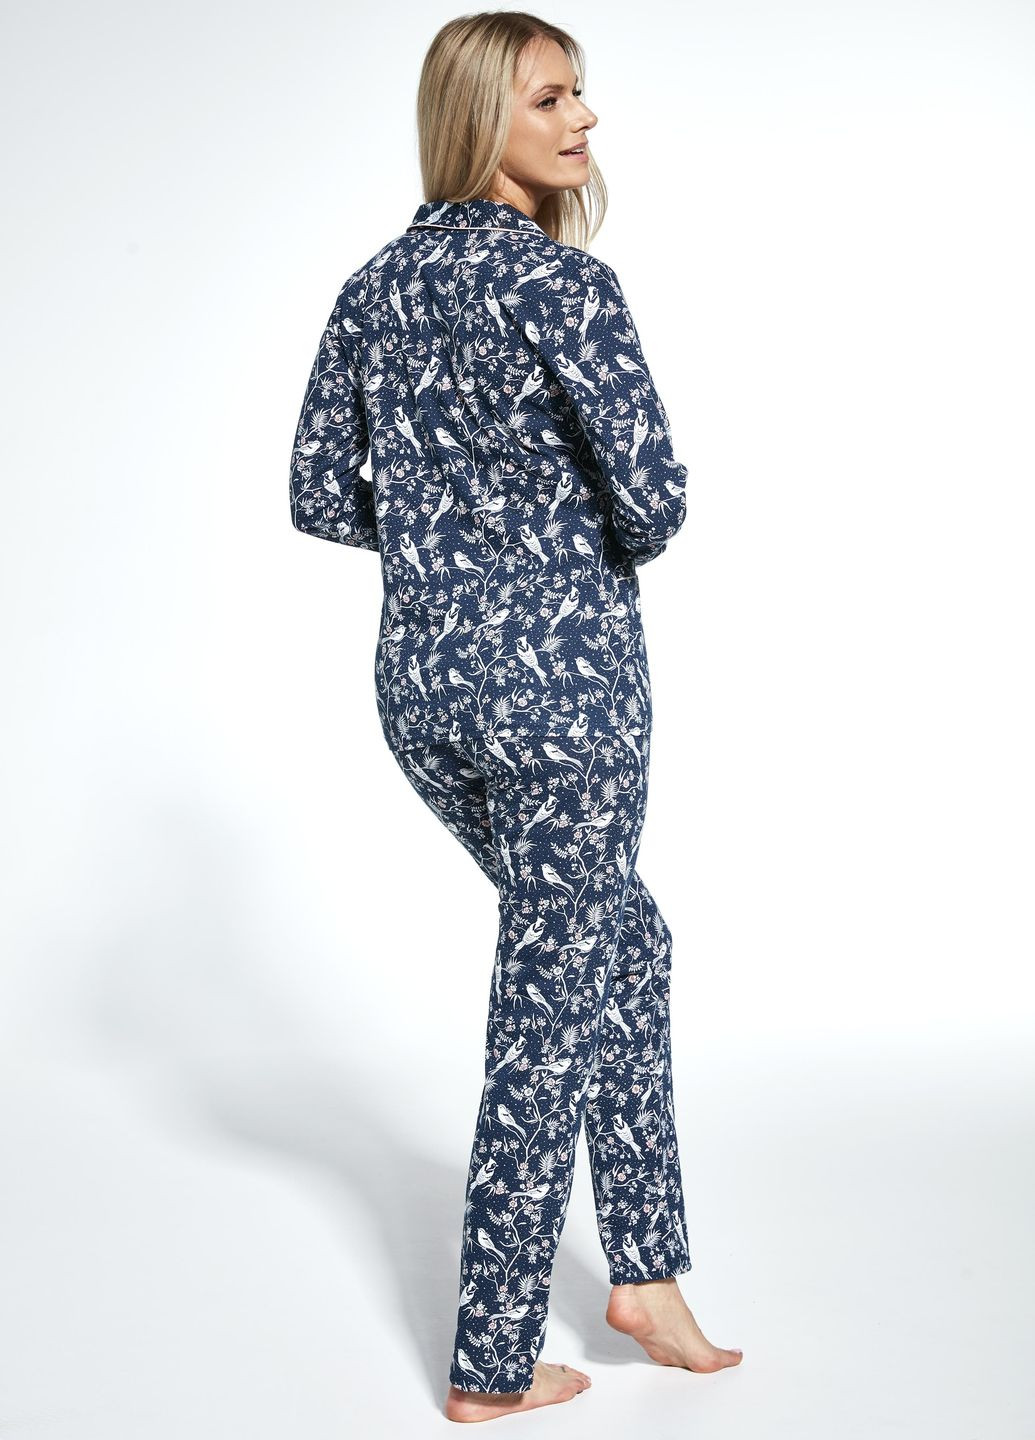 Синя 482-23 піжама жіноча (футб.довг.рук.,штани) 365 jane, s, navy blue (синій) Cornette